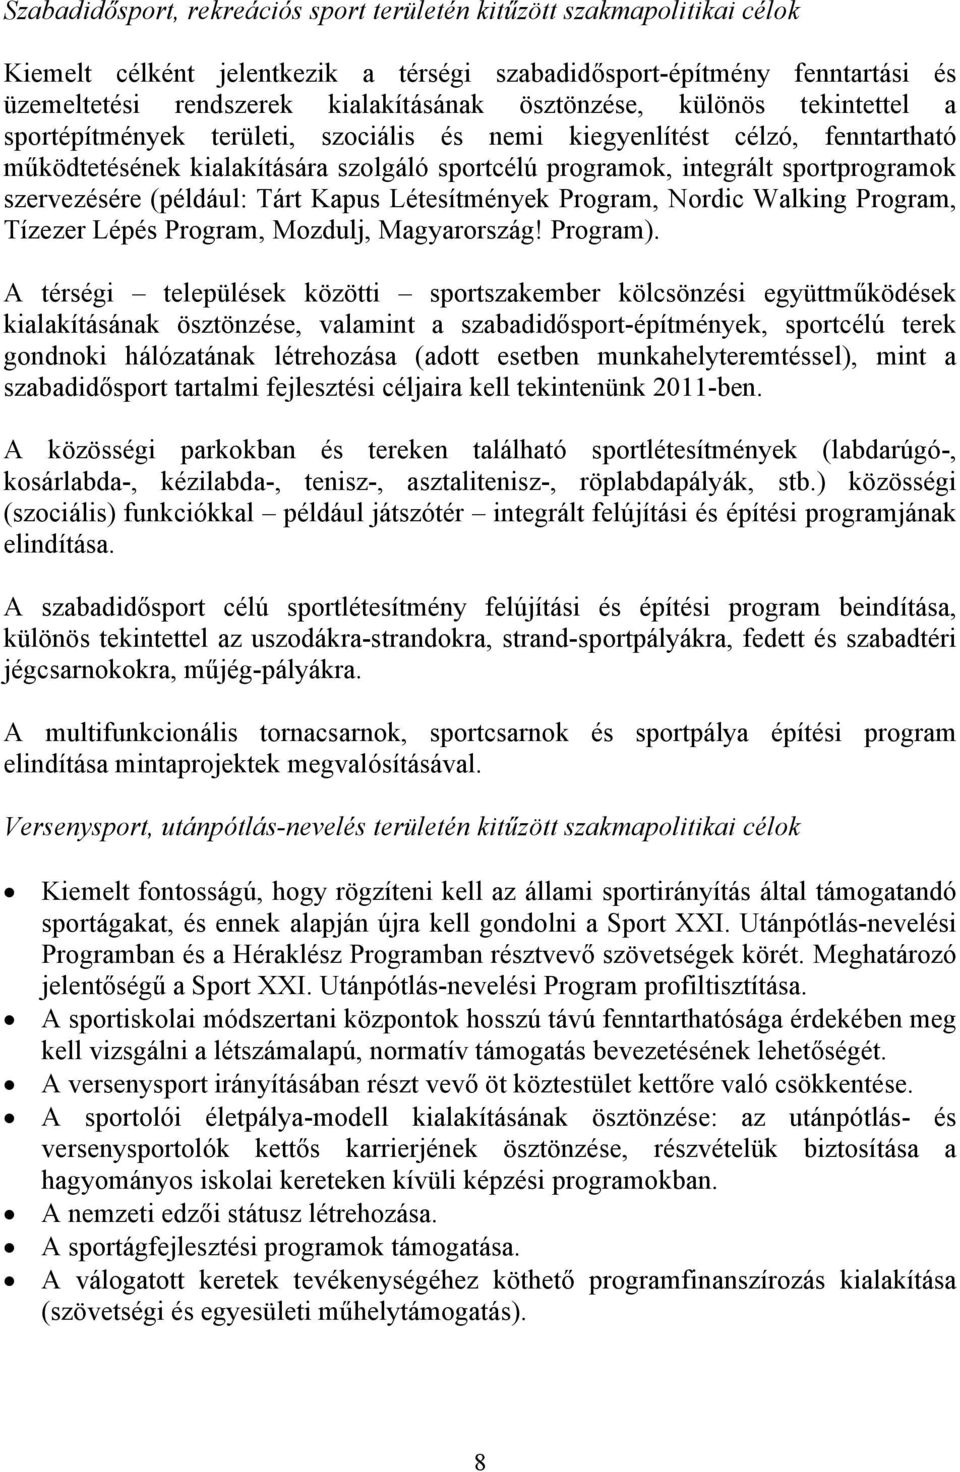 szervezésére (például: Tárt Kapus Létesítmények Program, Nordic Walking Program, Tízezer Lépés Program, Mozdulj, Magyarország! Program).